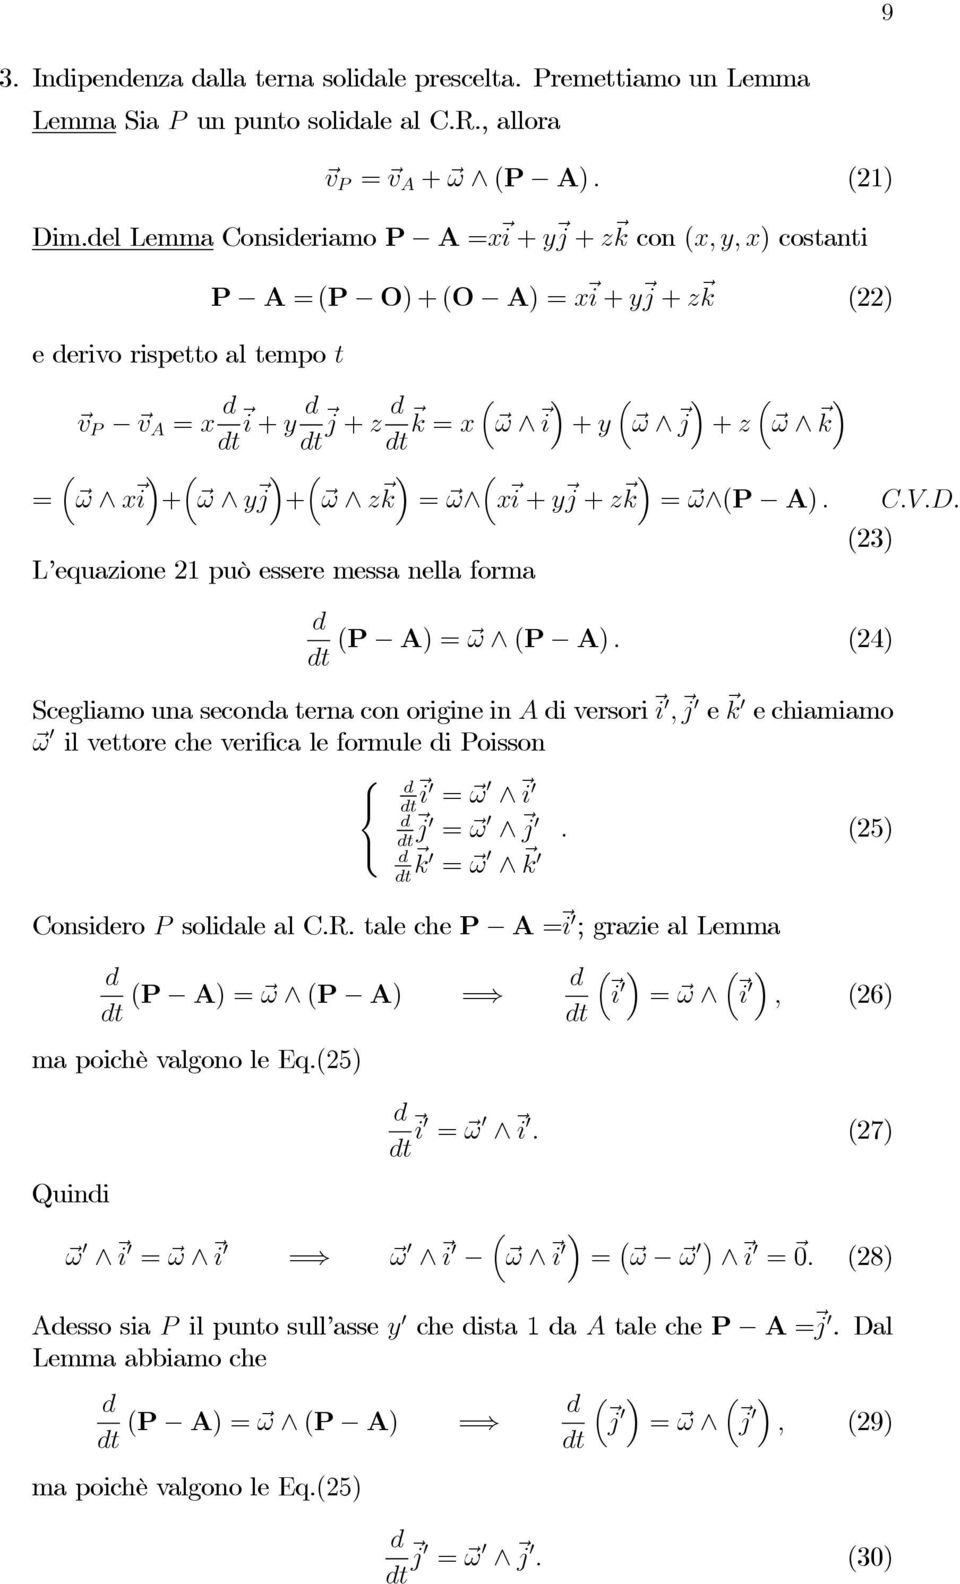 + ω y j + ω z ³ = ω x i + y j + z = ω (P A). C.V.D. (23) L equazione 21 può essere messa nella forma (P A) = ω (P A).